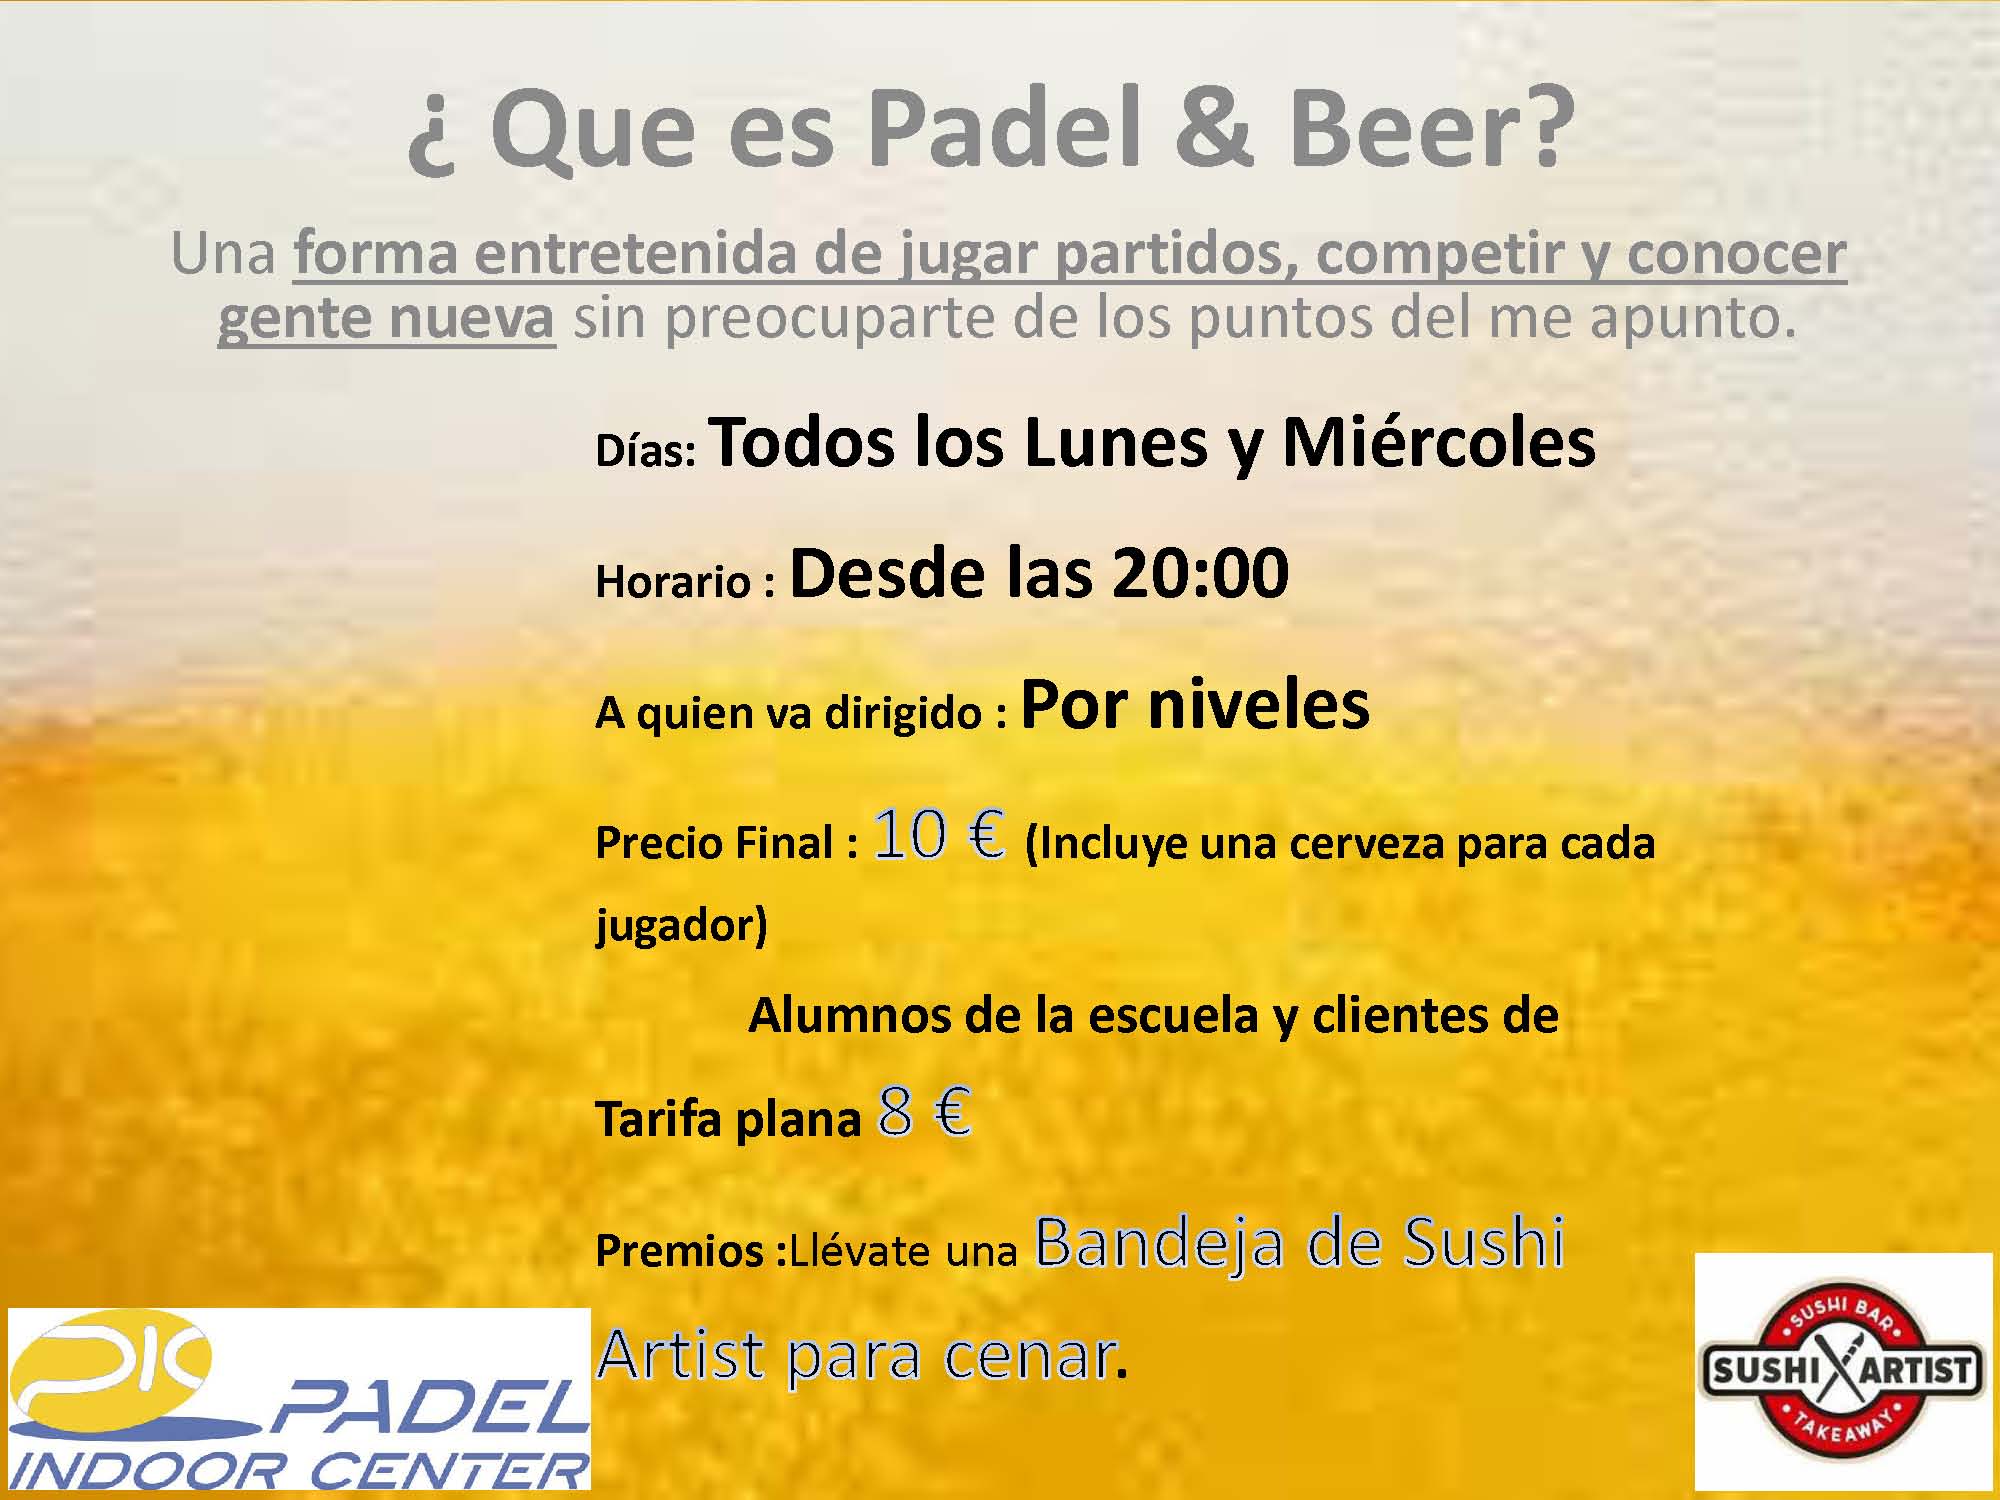 PADEL & BEER